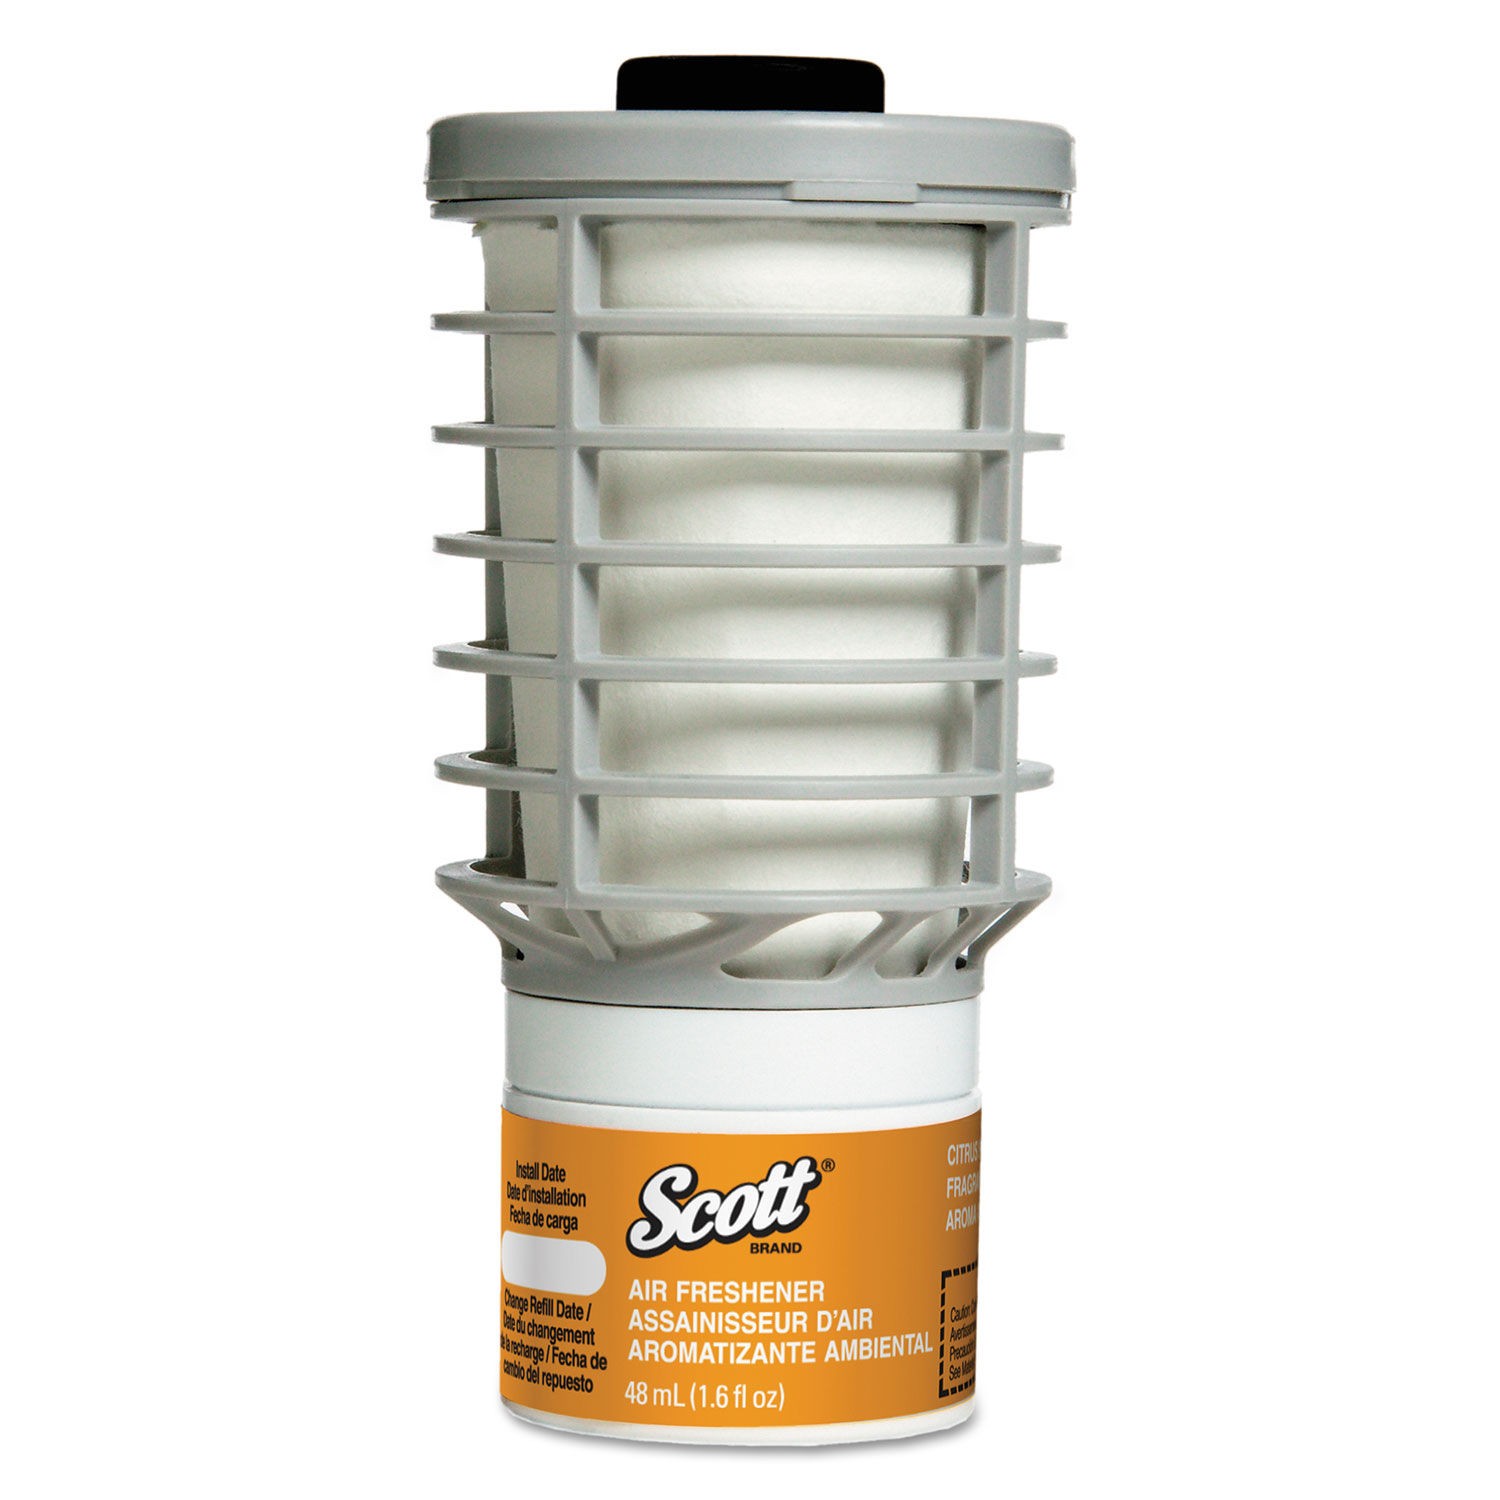 Scott Continuous Air Freshener Refill, Citrus, 48 ml Cartridge, 6/Carton